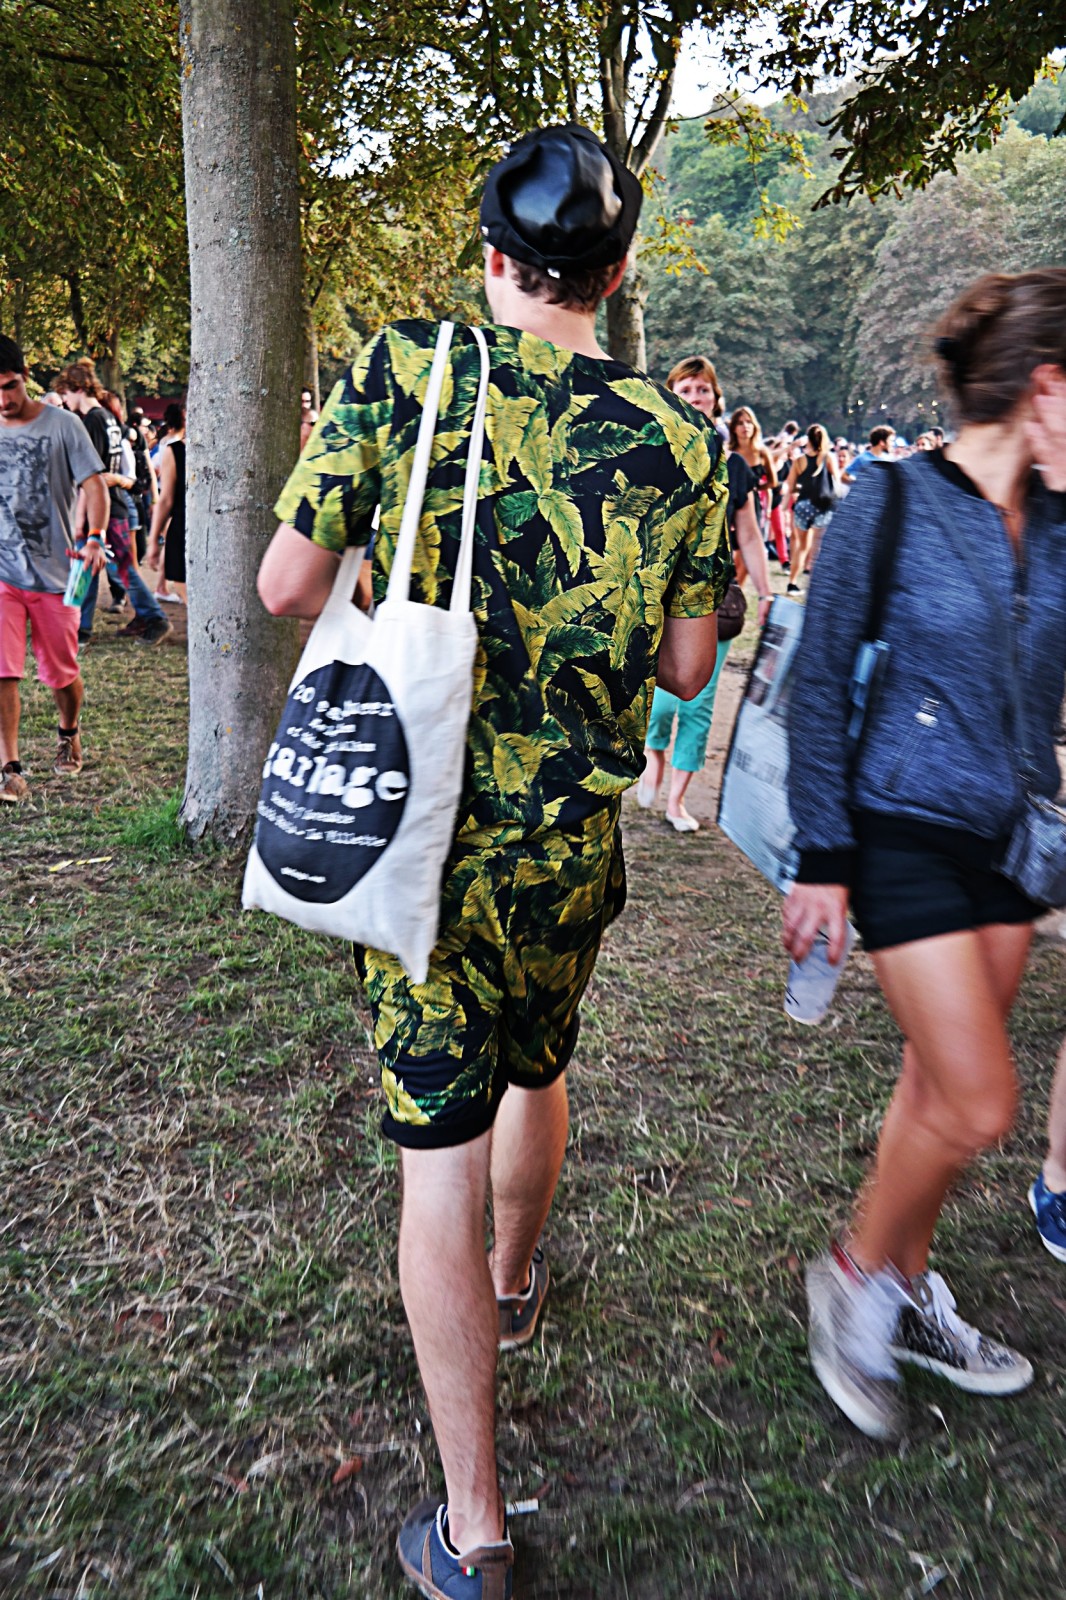 Festivalier habillé jungle festival rock en seine 2015 musique menswear fashion photo by united states of paris blog